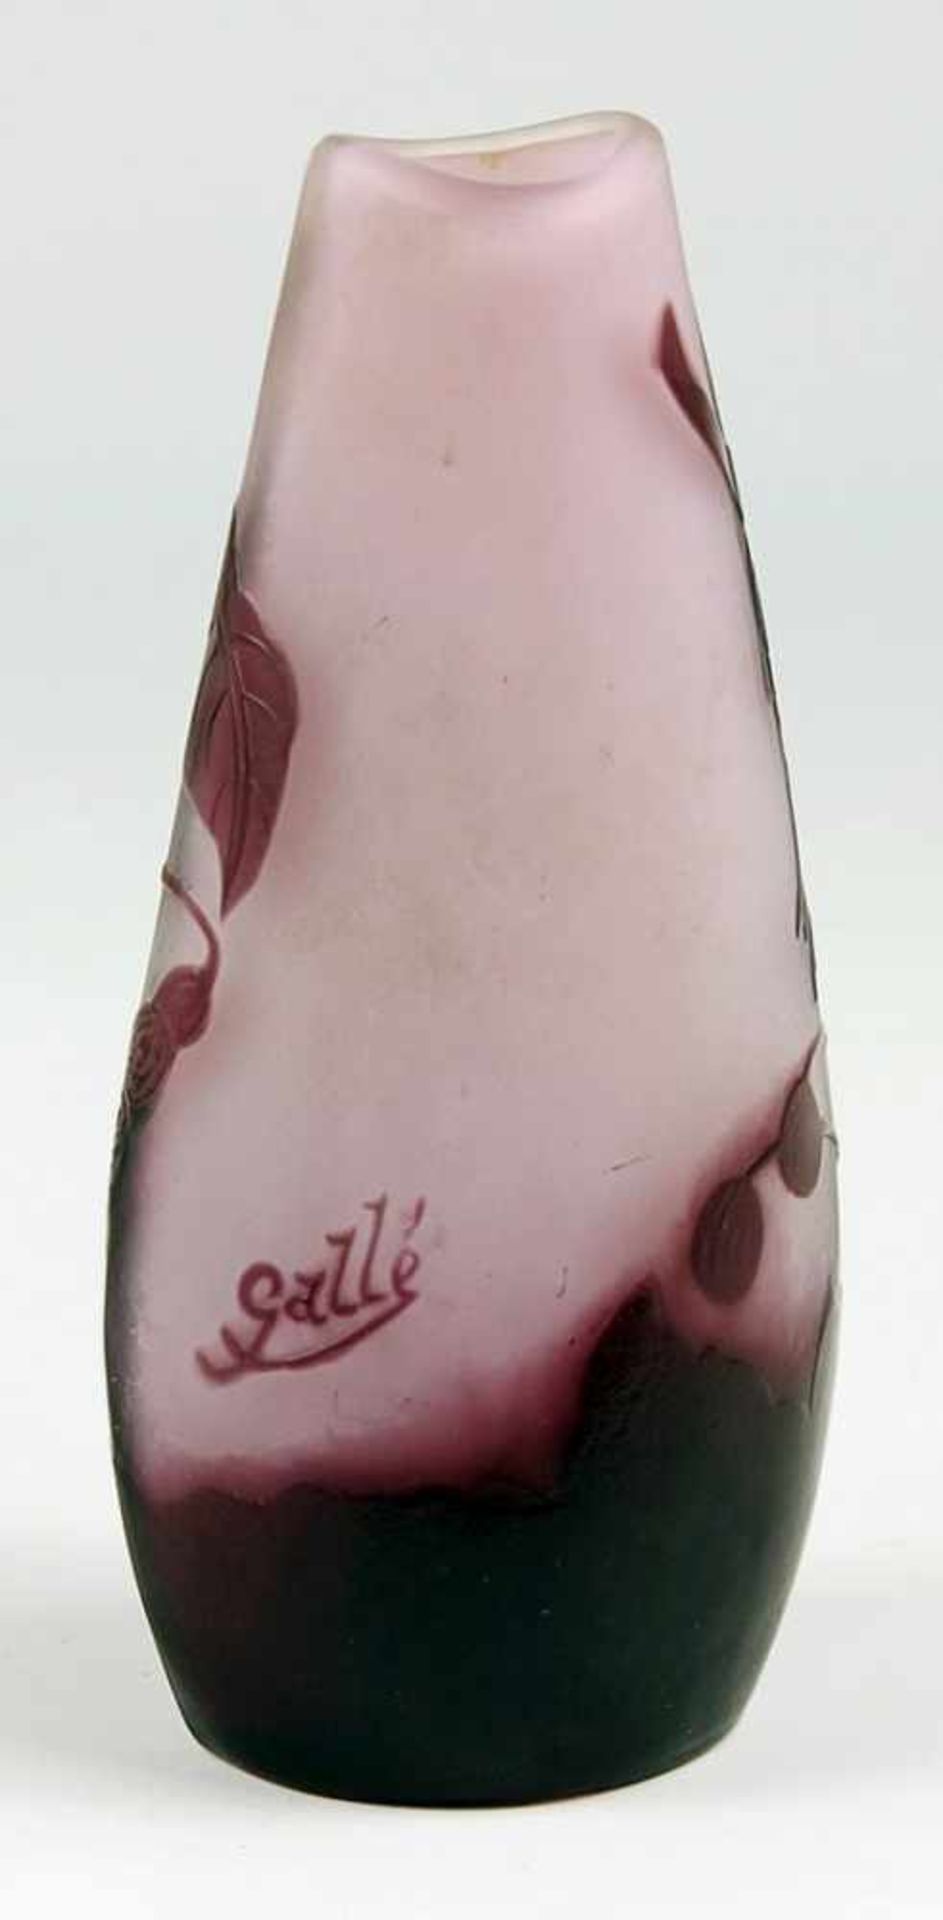 Gallé - Ziervase 1906/14, Emile Gallé, Frankreich, farbloses Glas, milchig weiß unterfangen, - Bild 2 aus 3